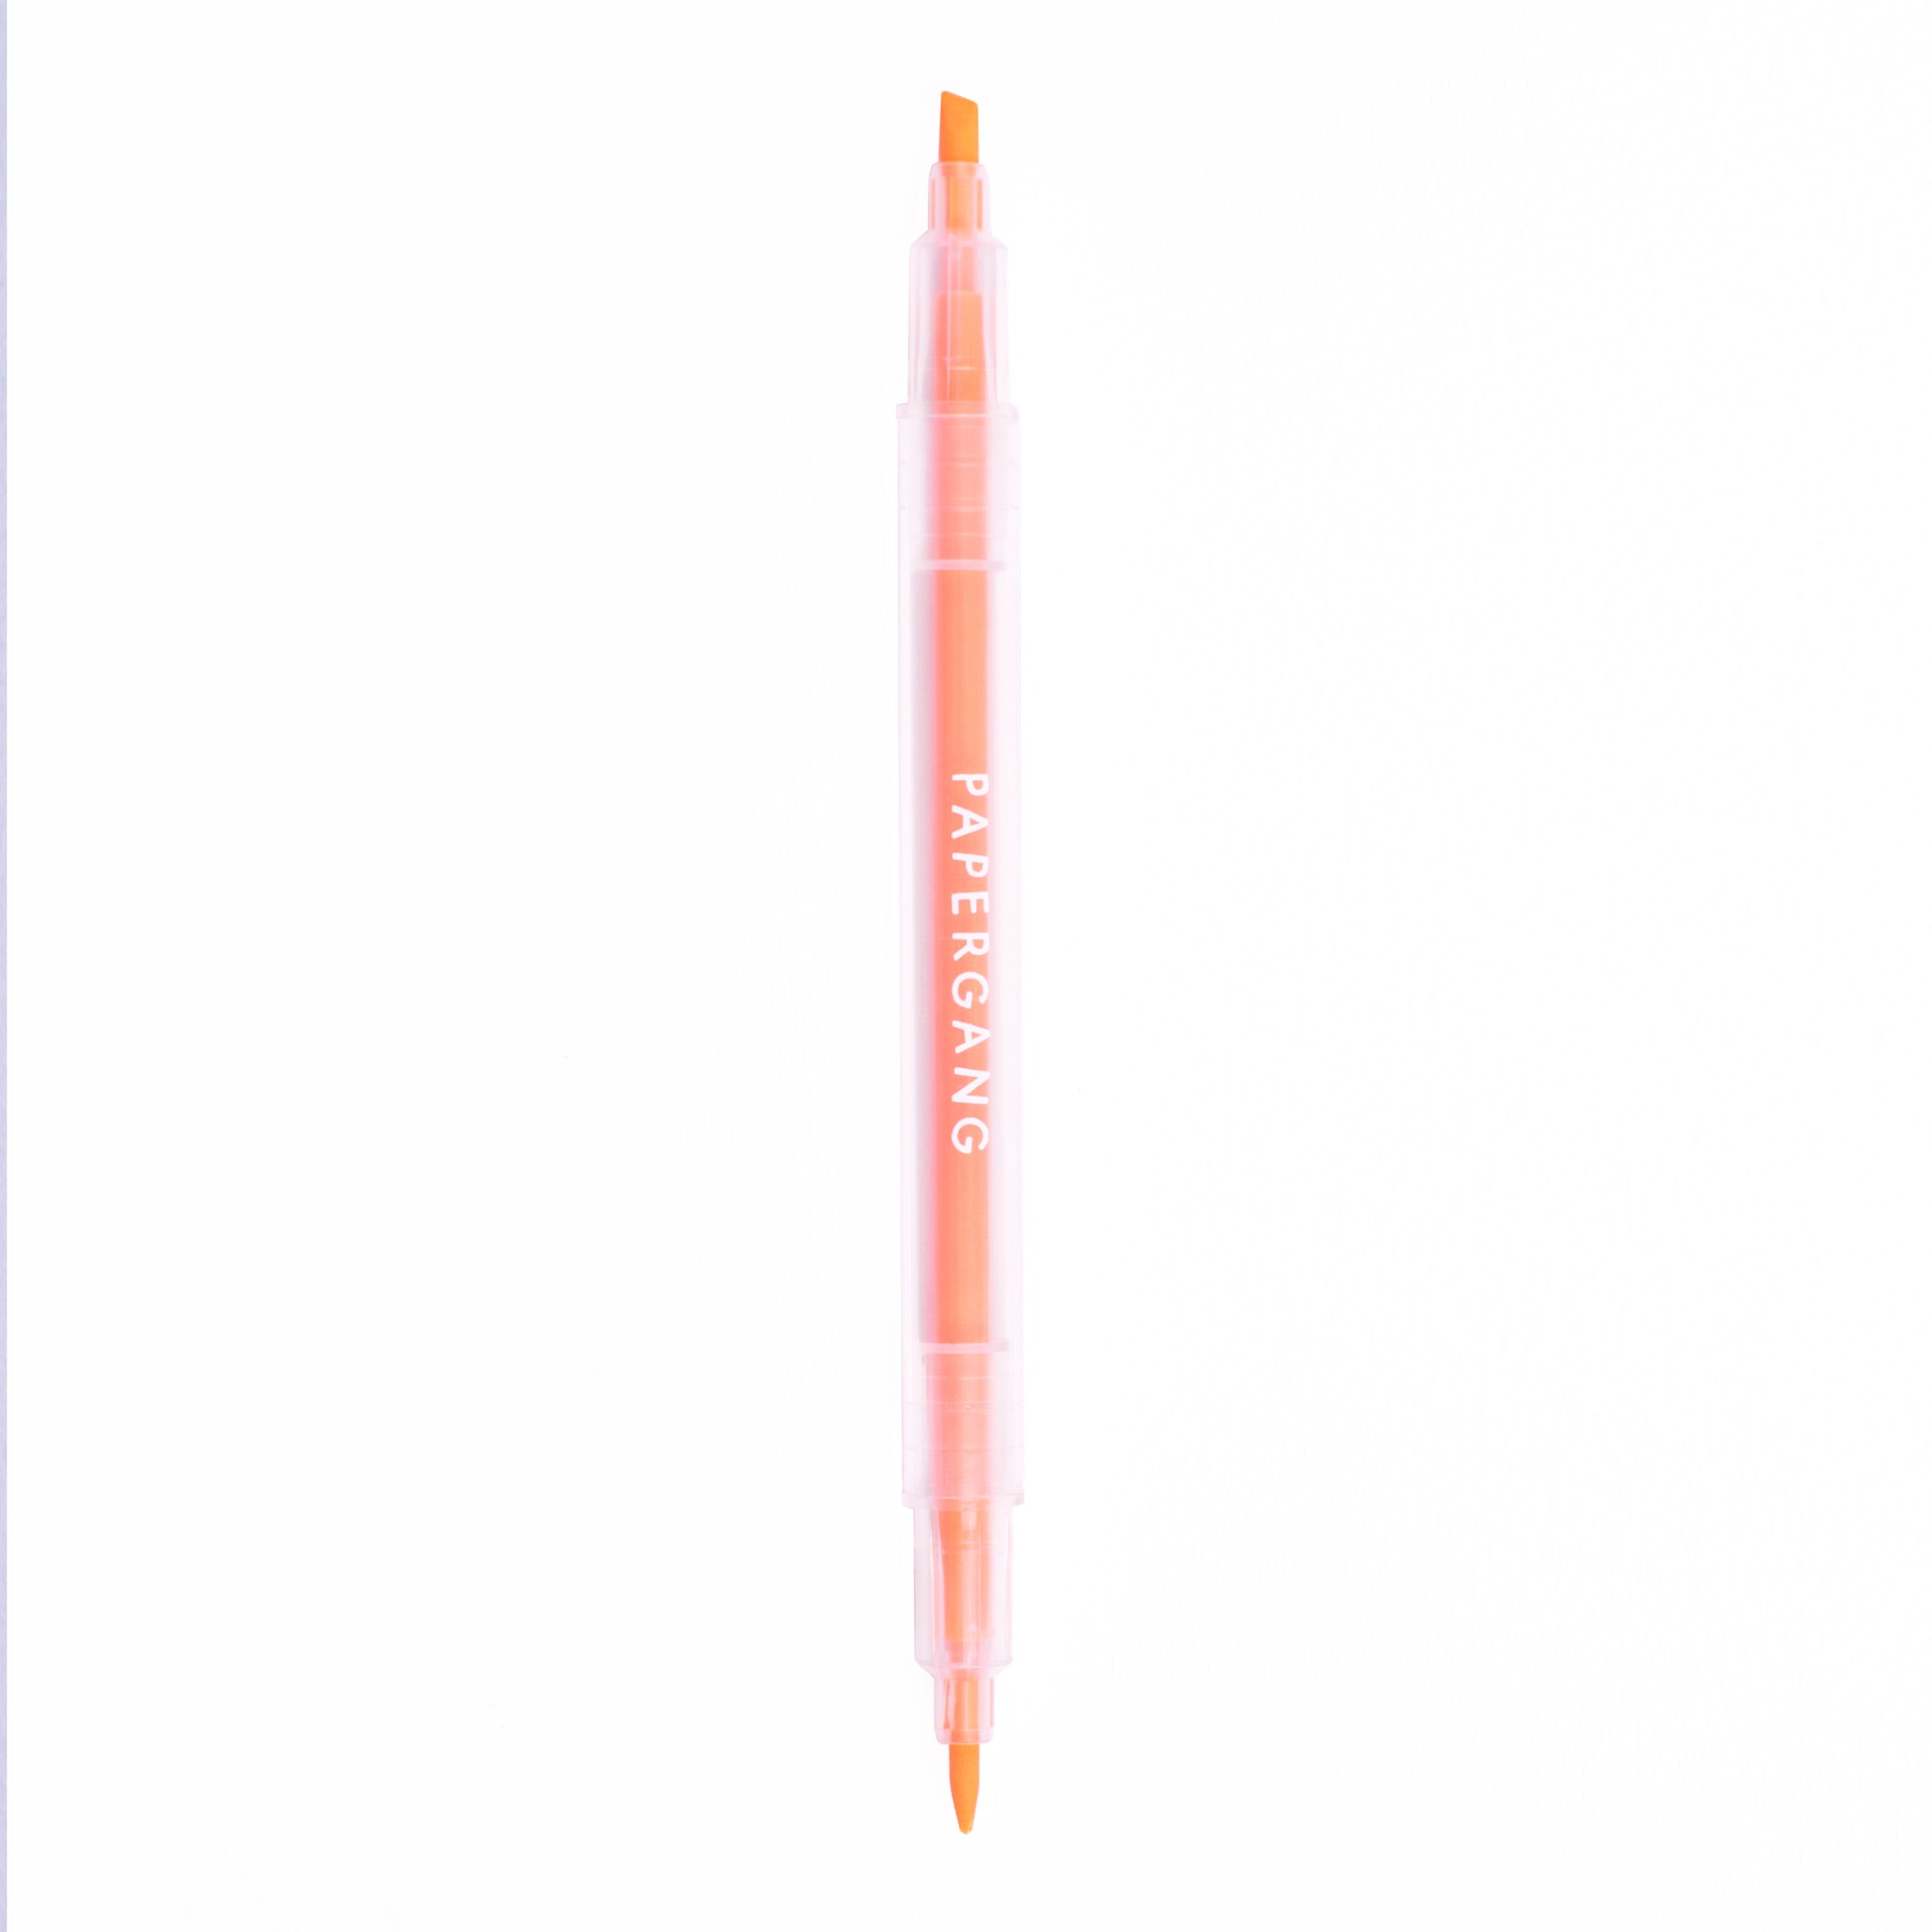 Papergang Orange Highlighter Pen